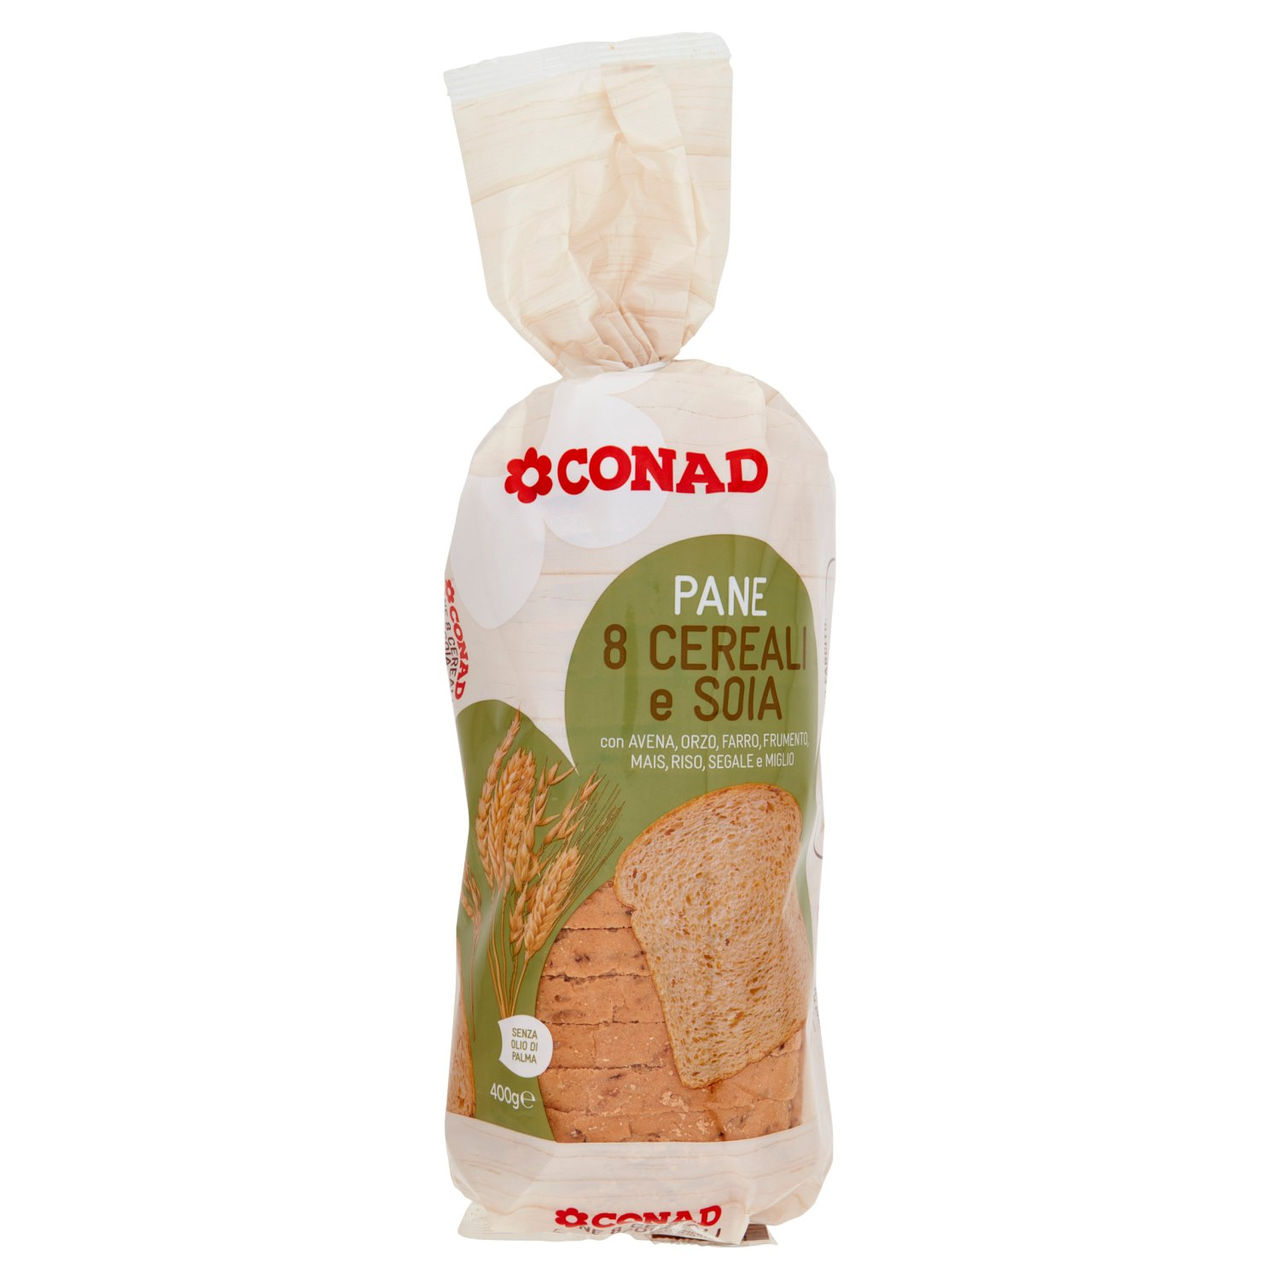 Pane 8 Cereali e Soia 400 g Conad vendita online